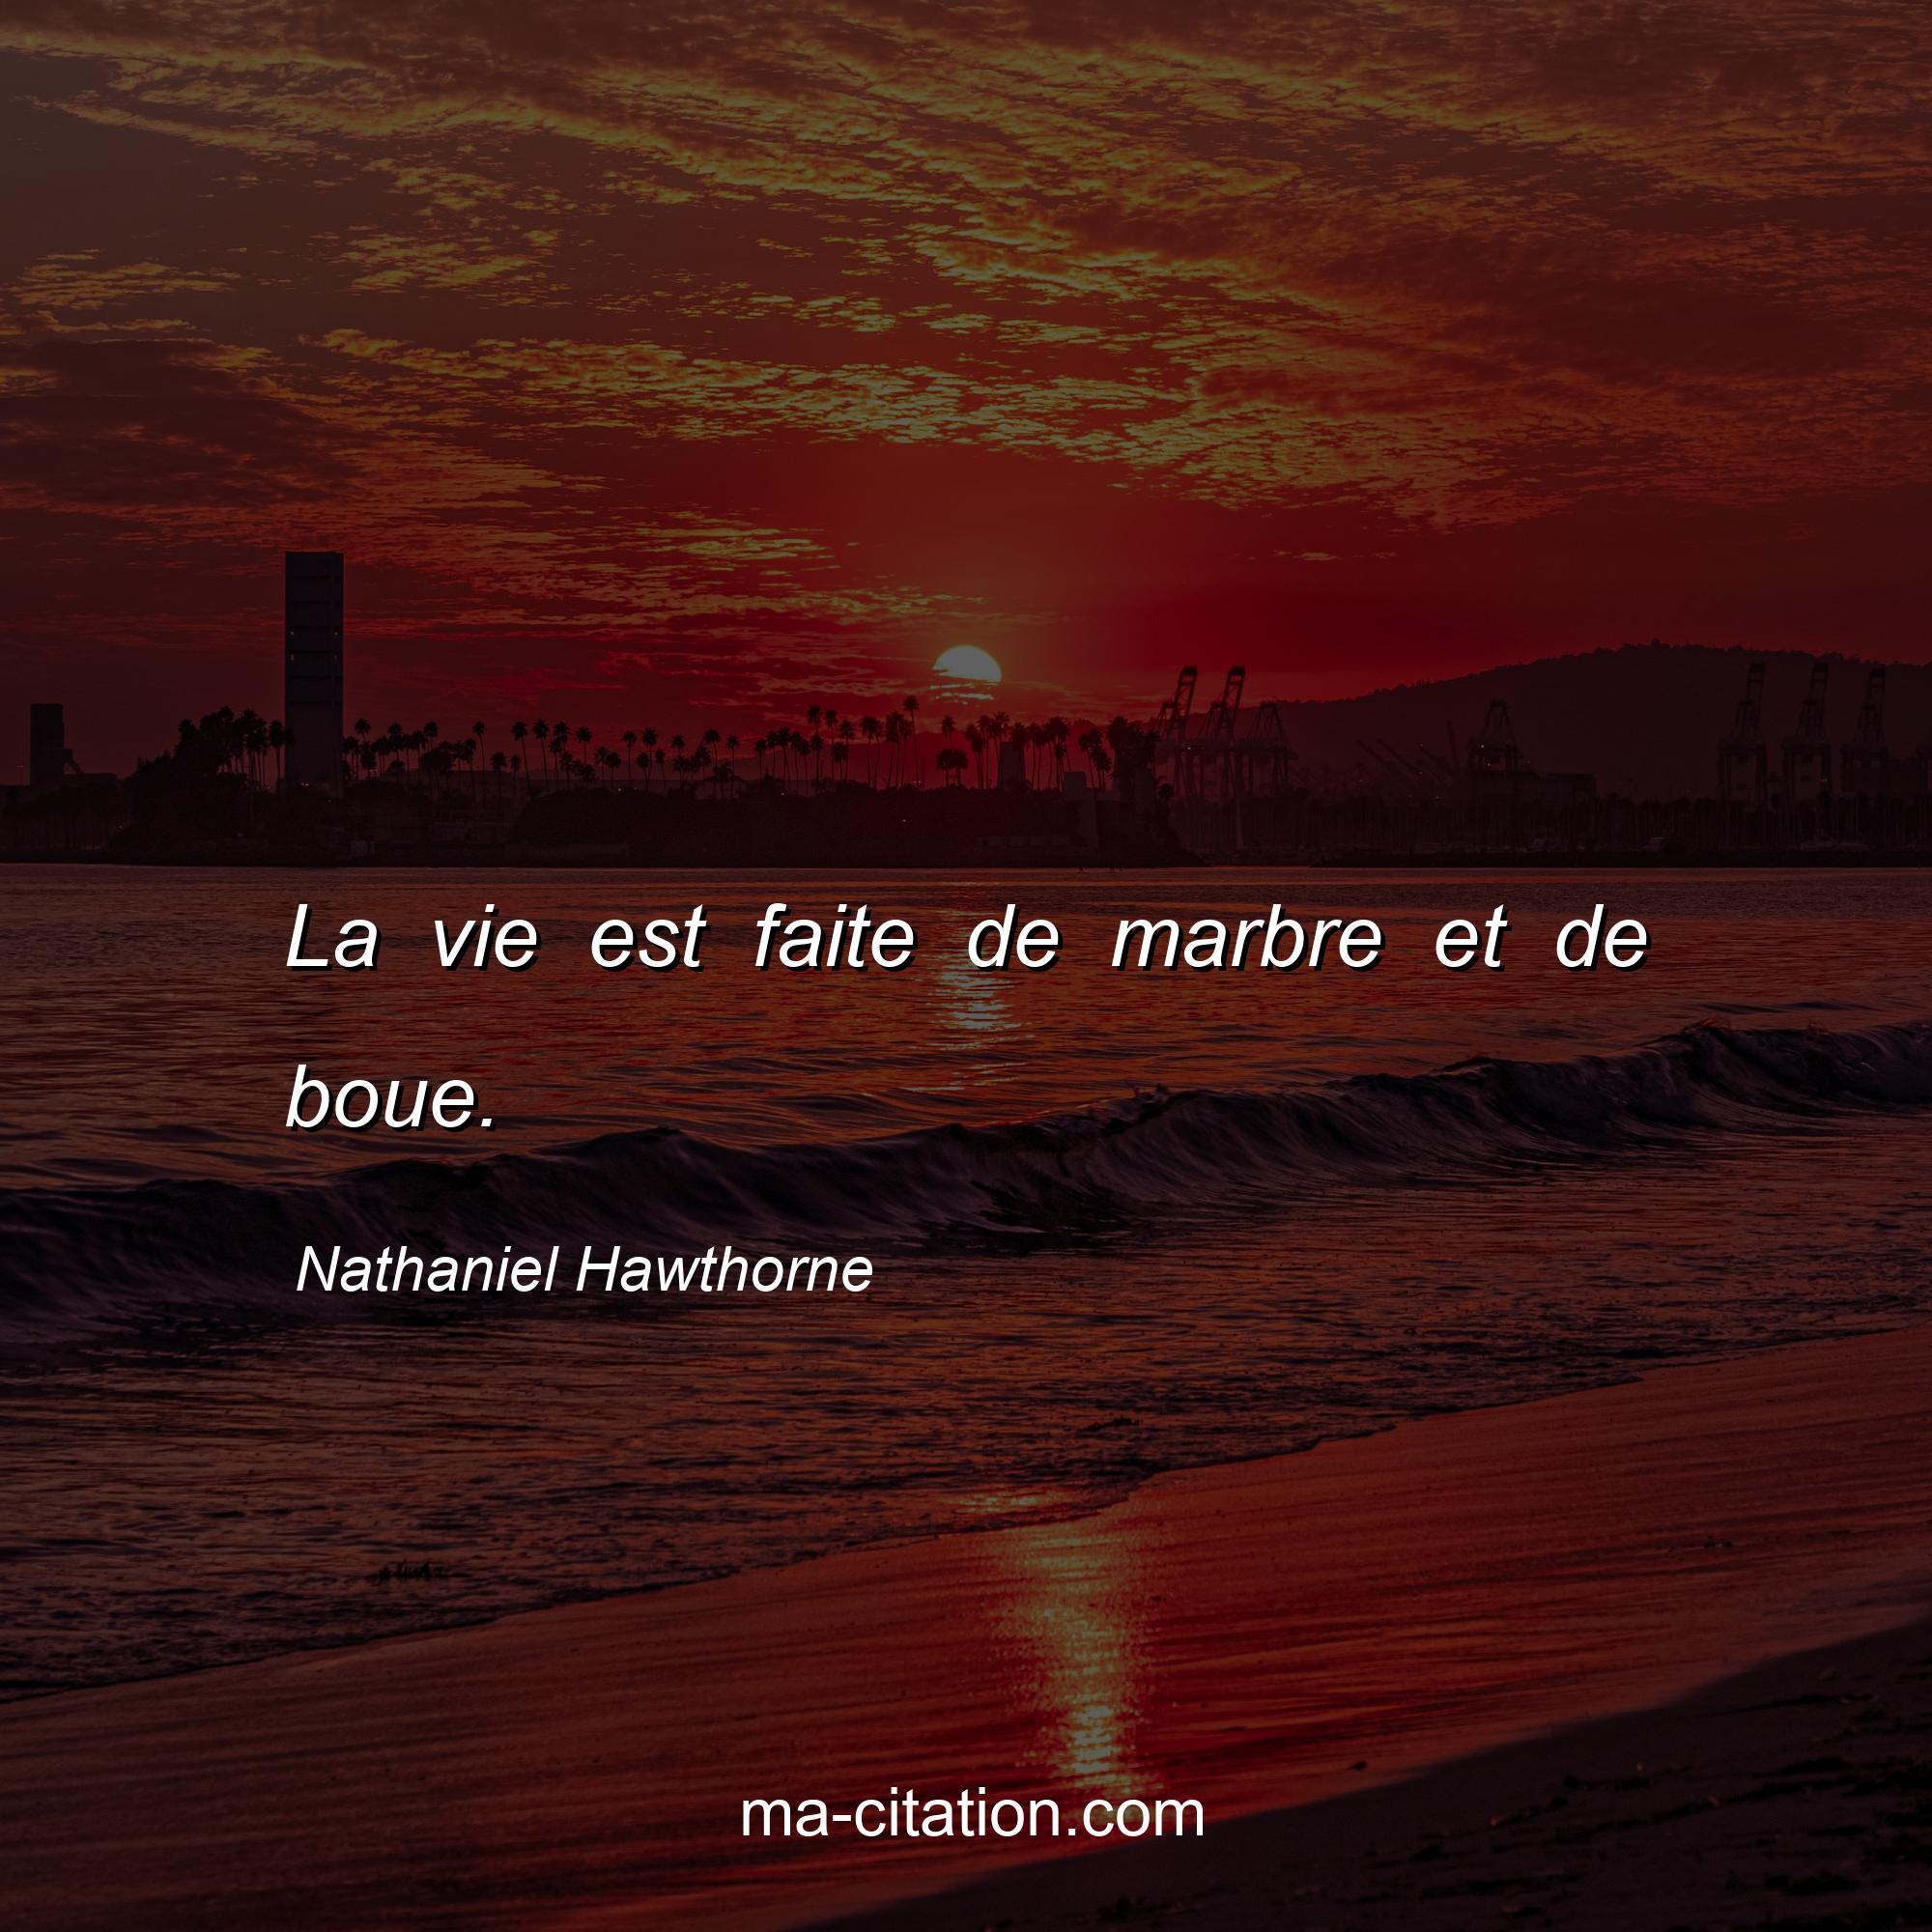 Nathaniel Hawthorne : La vie est faite de marbre et de boue.